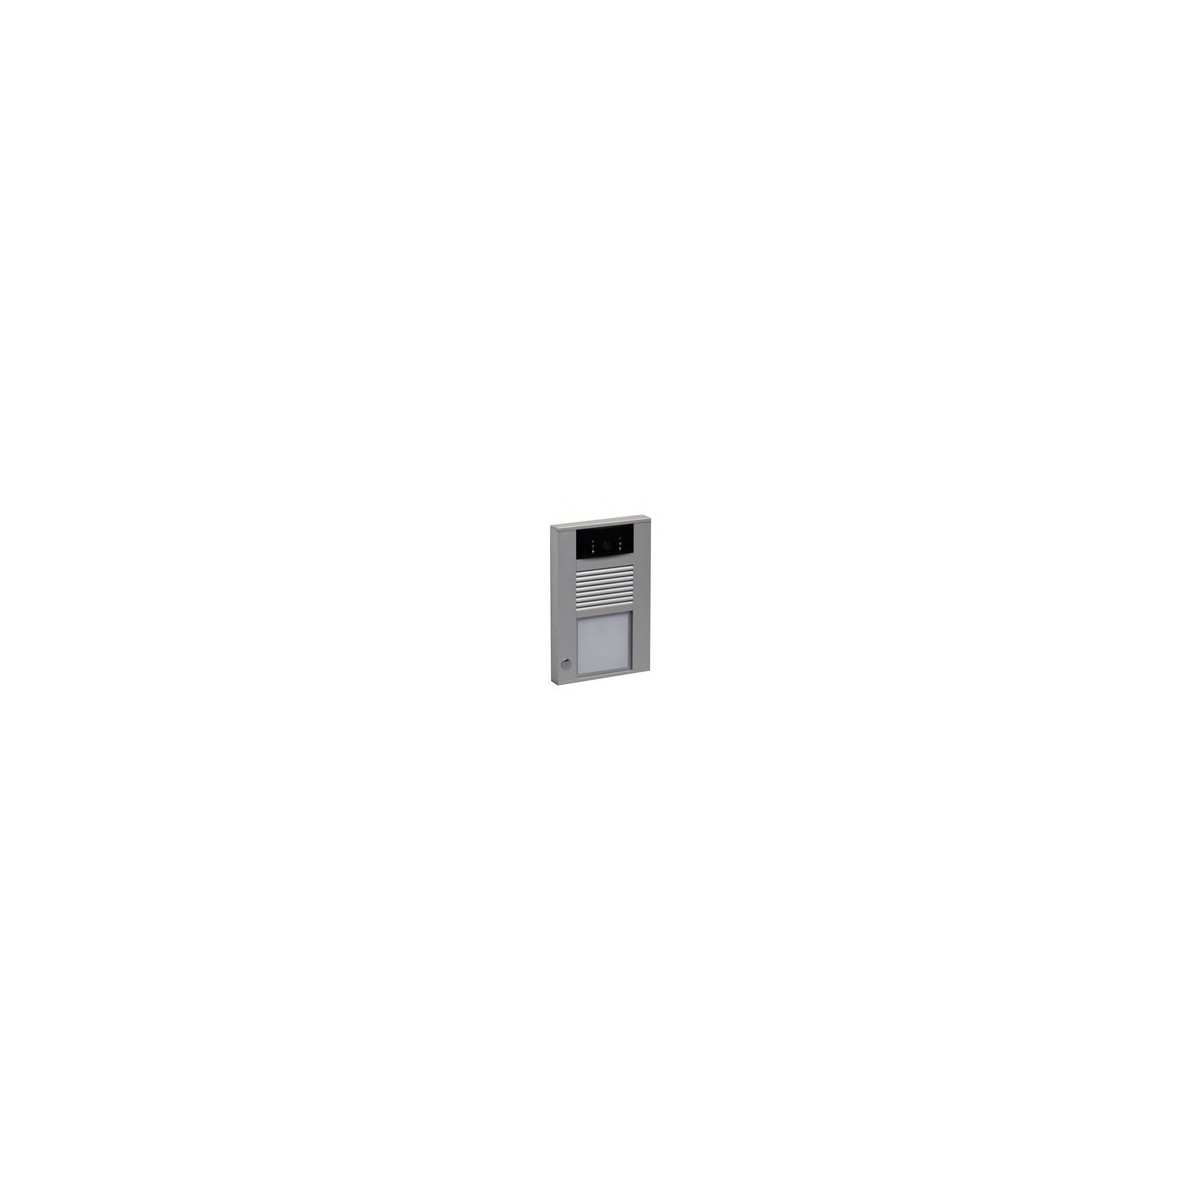 WANTEC 4233 - Grau - Aluminium - 10-100-1000Base-T(X) - IEEE 802.3af - 1280 x 720 Pixel - 720p